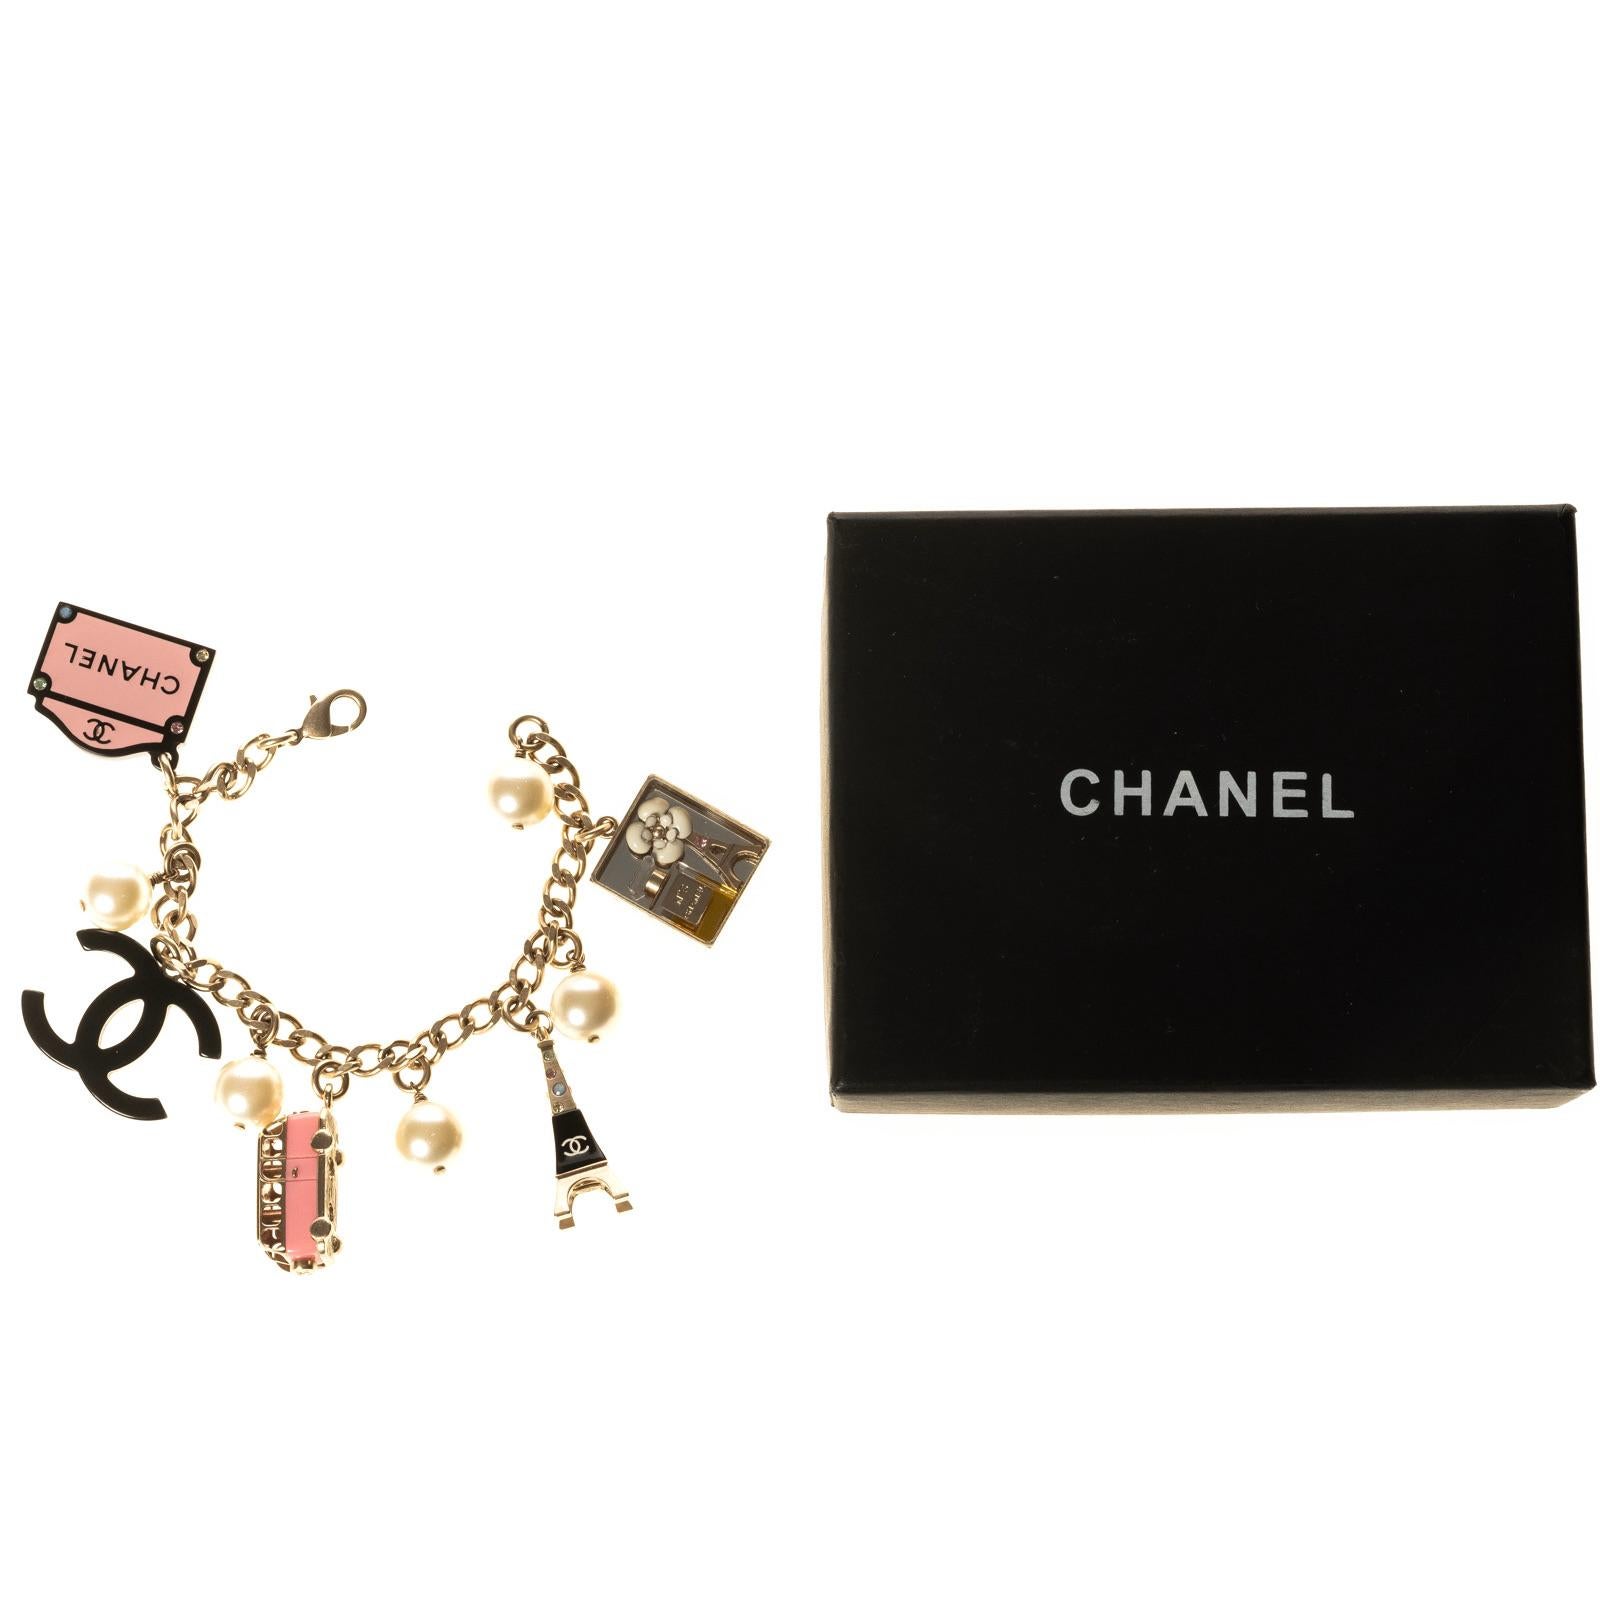 Chanel Crystal & Faux Pearl Paris Souvenirs Charm Bracelet 2